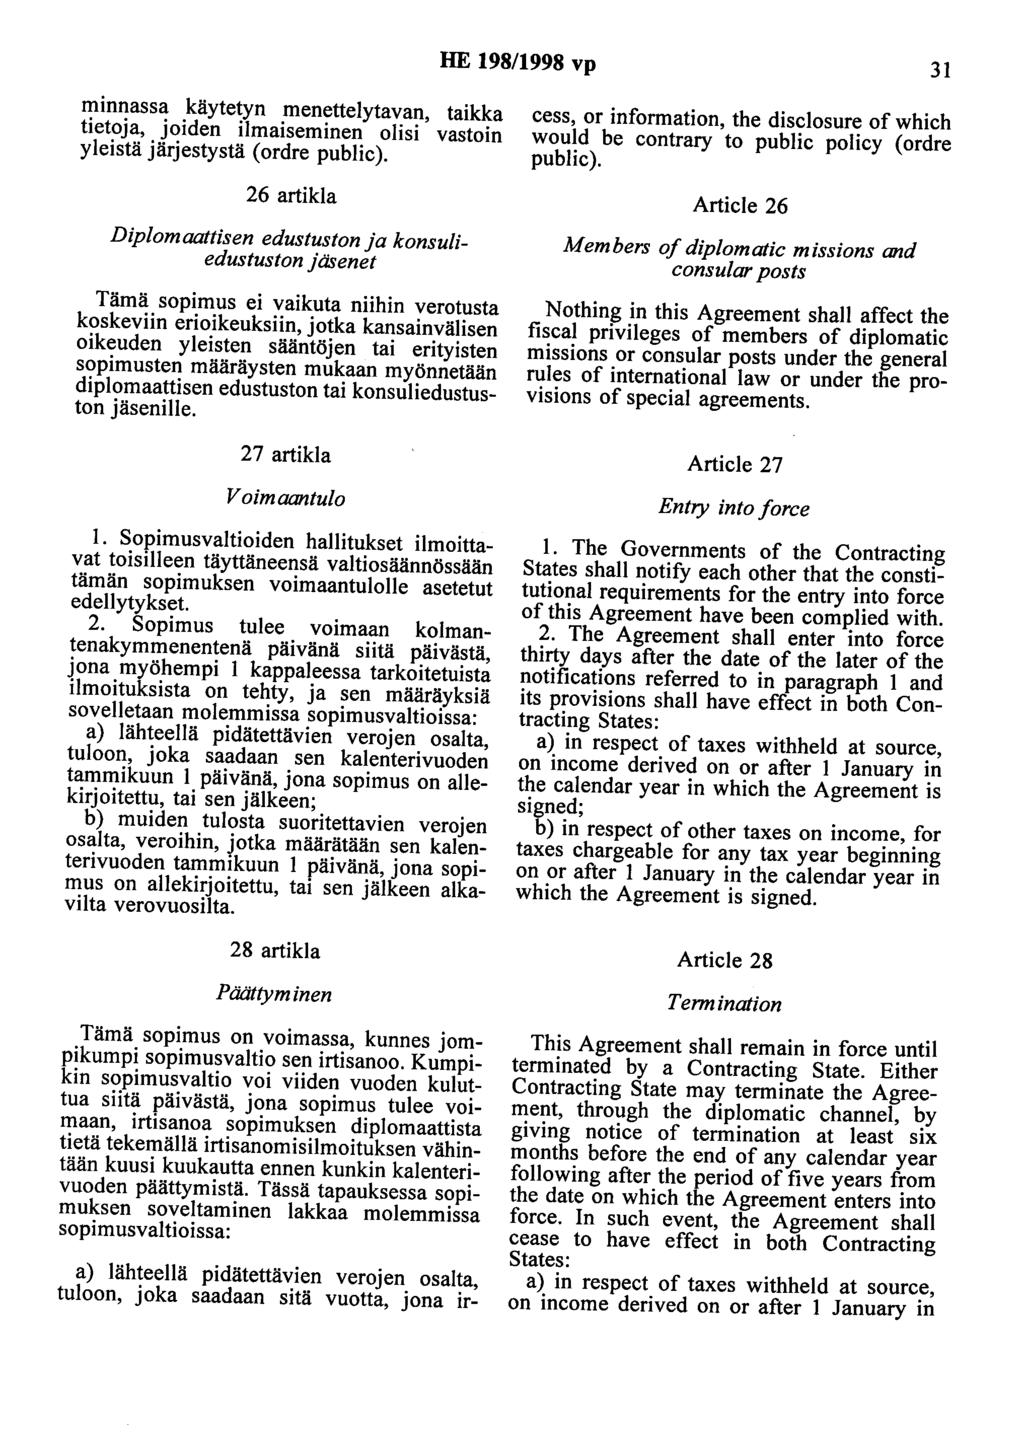 HE 198/1998 vp 31 minnassa käytetyn menettelytavan, taikka tietoja, joiden ilmaiseminen olisi vastoin yleistä järjestystä (ordre public).